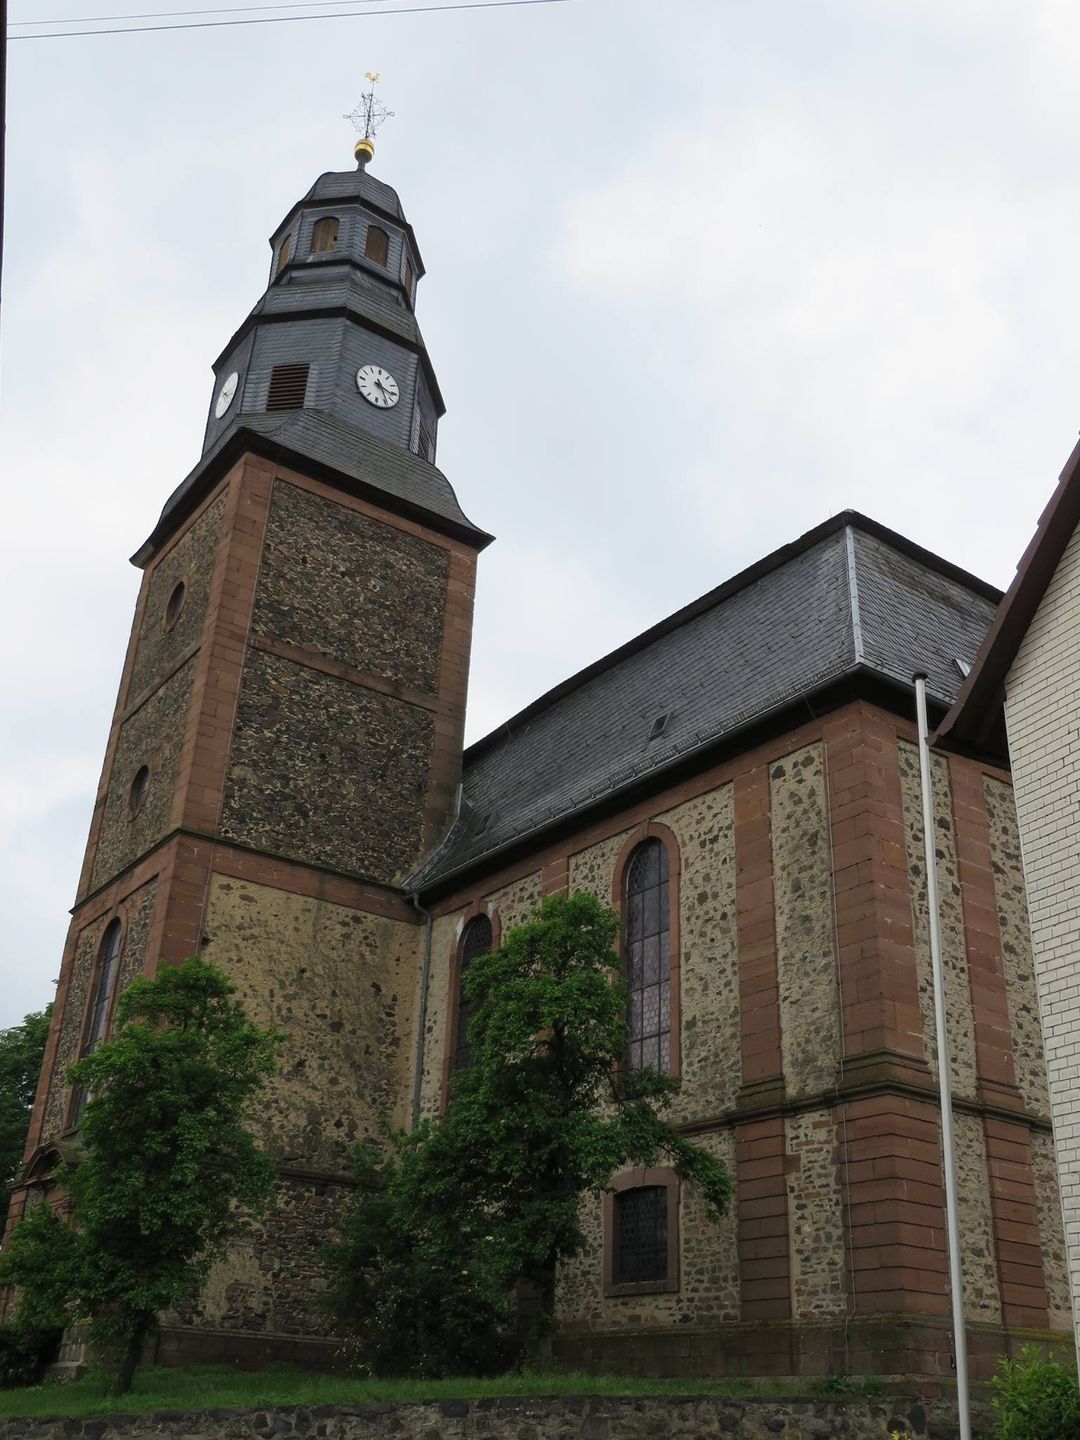 Oberreichenbach church in 2016. Courtesy of Maggie Hein.